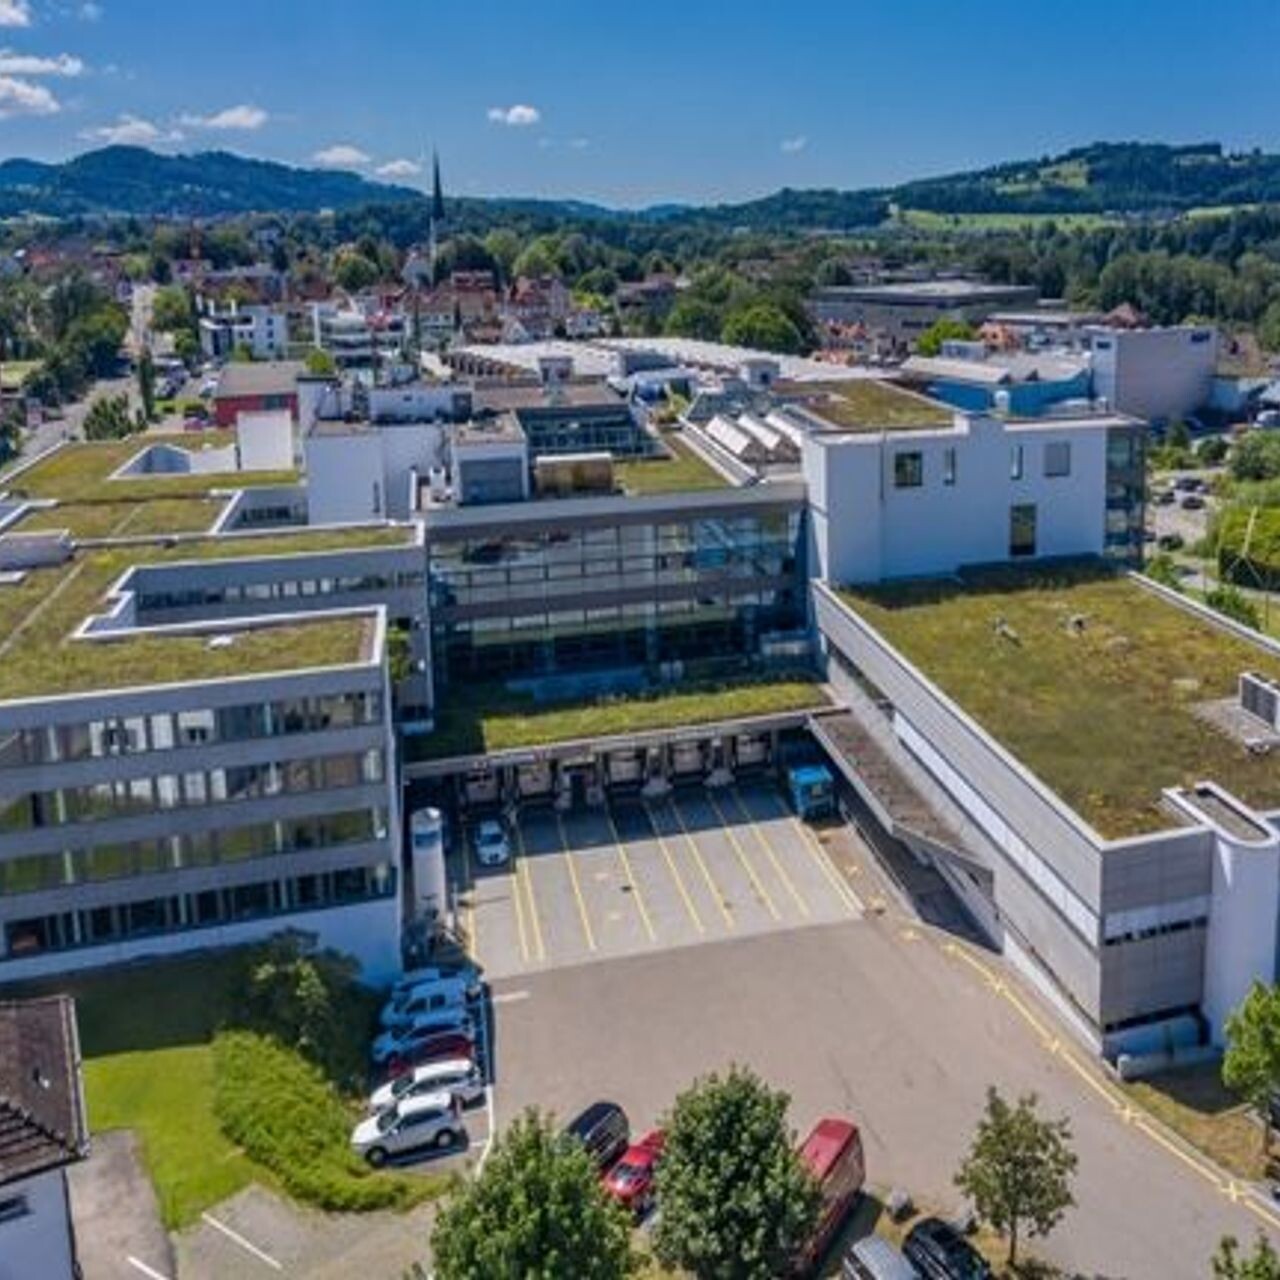 Il Campus Lerchenfeld di San Gallo, base del Parco Svizzero dell'Innovazione Est, visto dall'alto